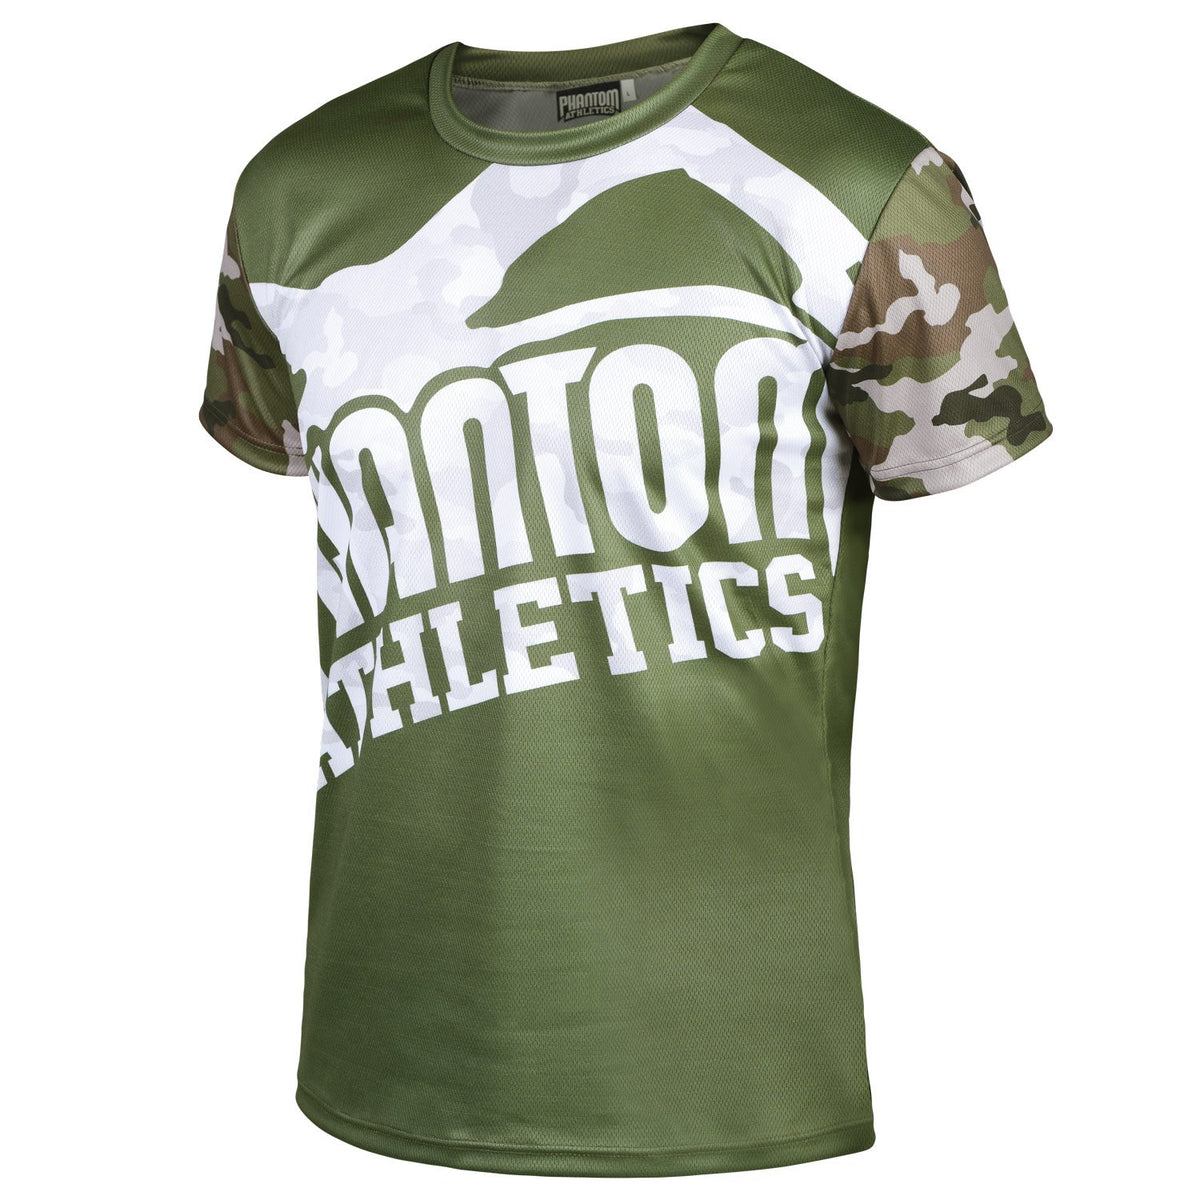 Training shirt evo warfare - army camo